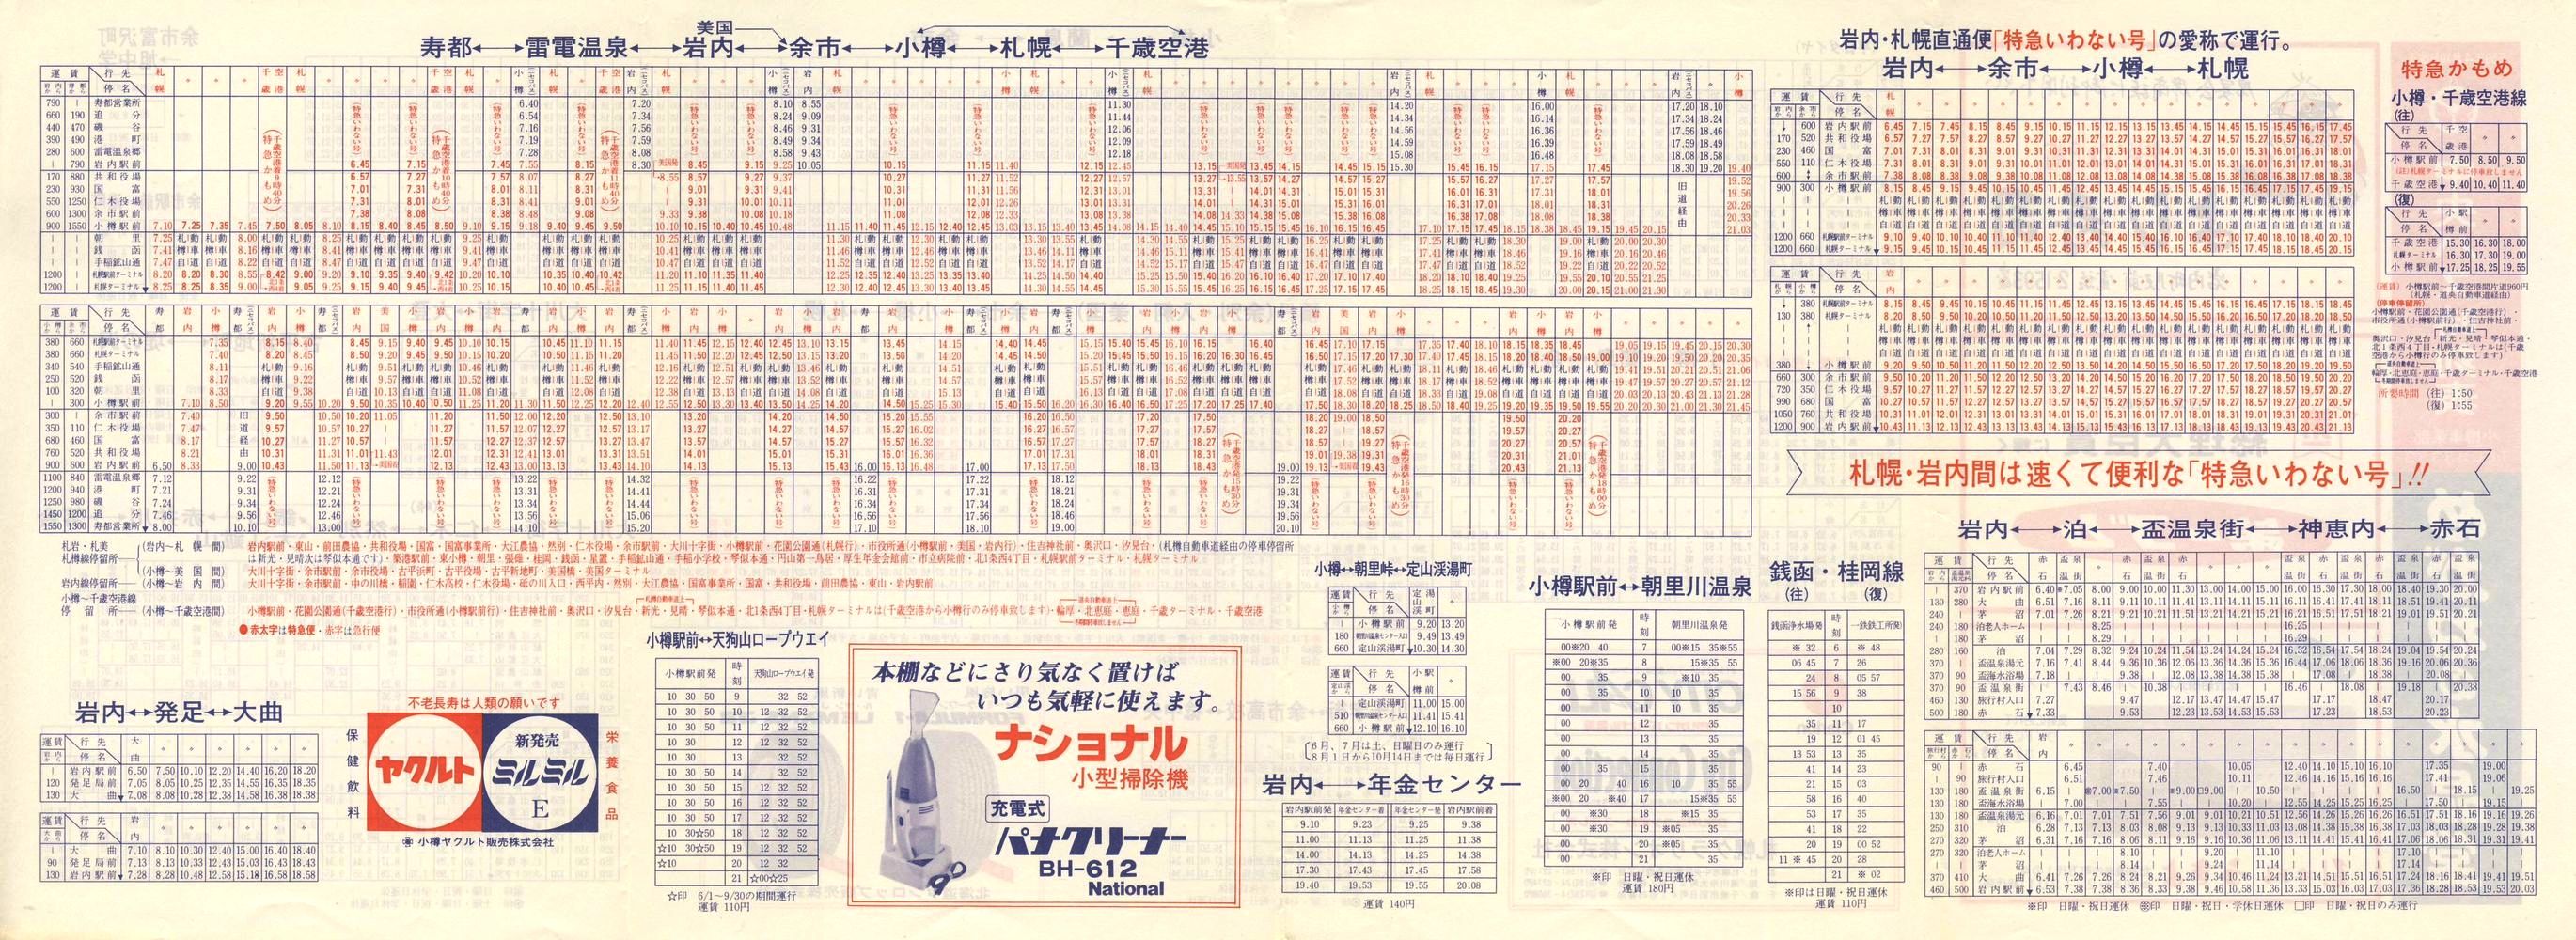 1984-04-10改正_北海道中央バス(小樽)_小樽事業部管内郊外線時刻表裏面